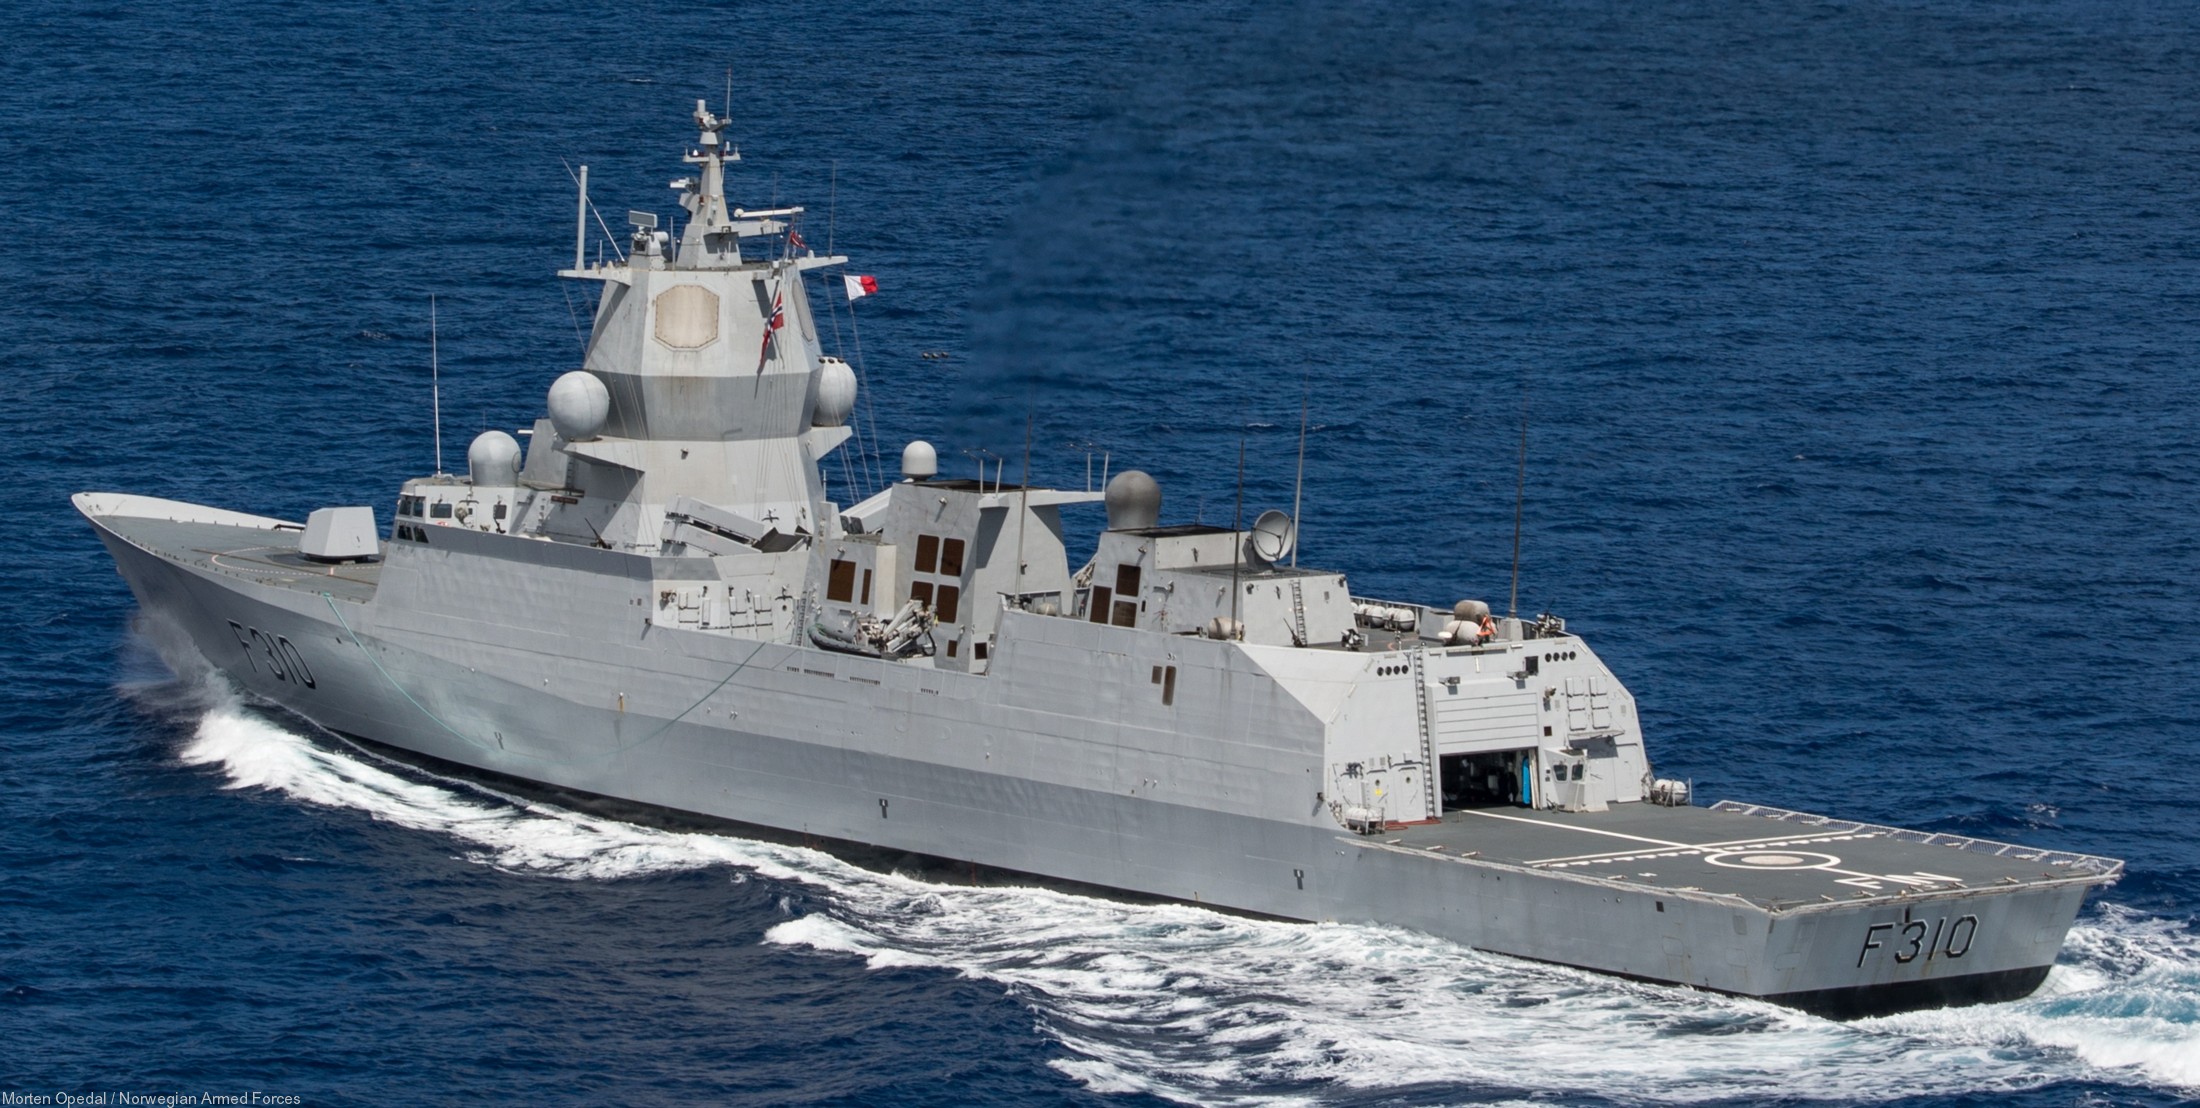 f-310 fridtjof nansen hnoms knm frigate royal norwegian navy sjoforsvaret 02